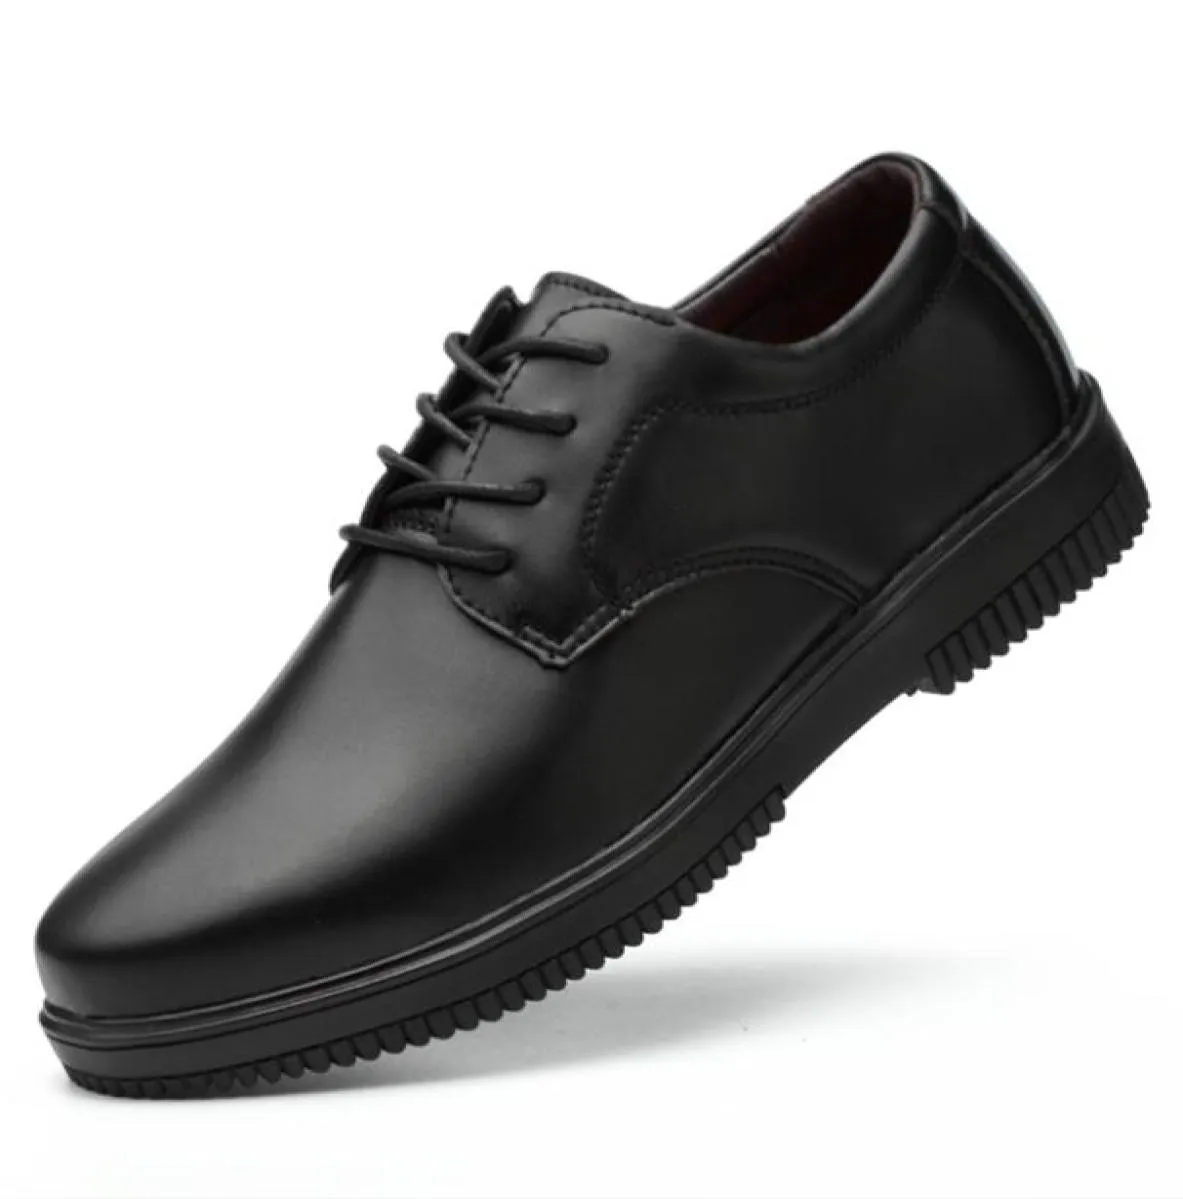 Туфли для шеф-повара и официанта, кухонная обувь для ресторанов и ресторанов, мягкая рабочая нескользящая обувь на плоской подошве, черная, маслостойкая, водонепроницаемая, пригодная для носки 2108262288577